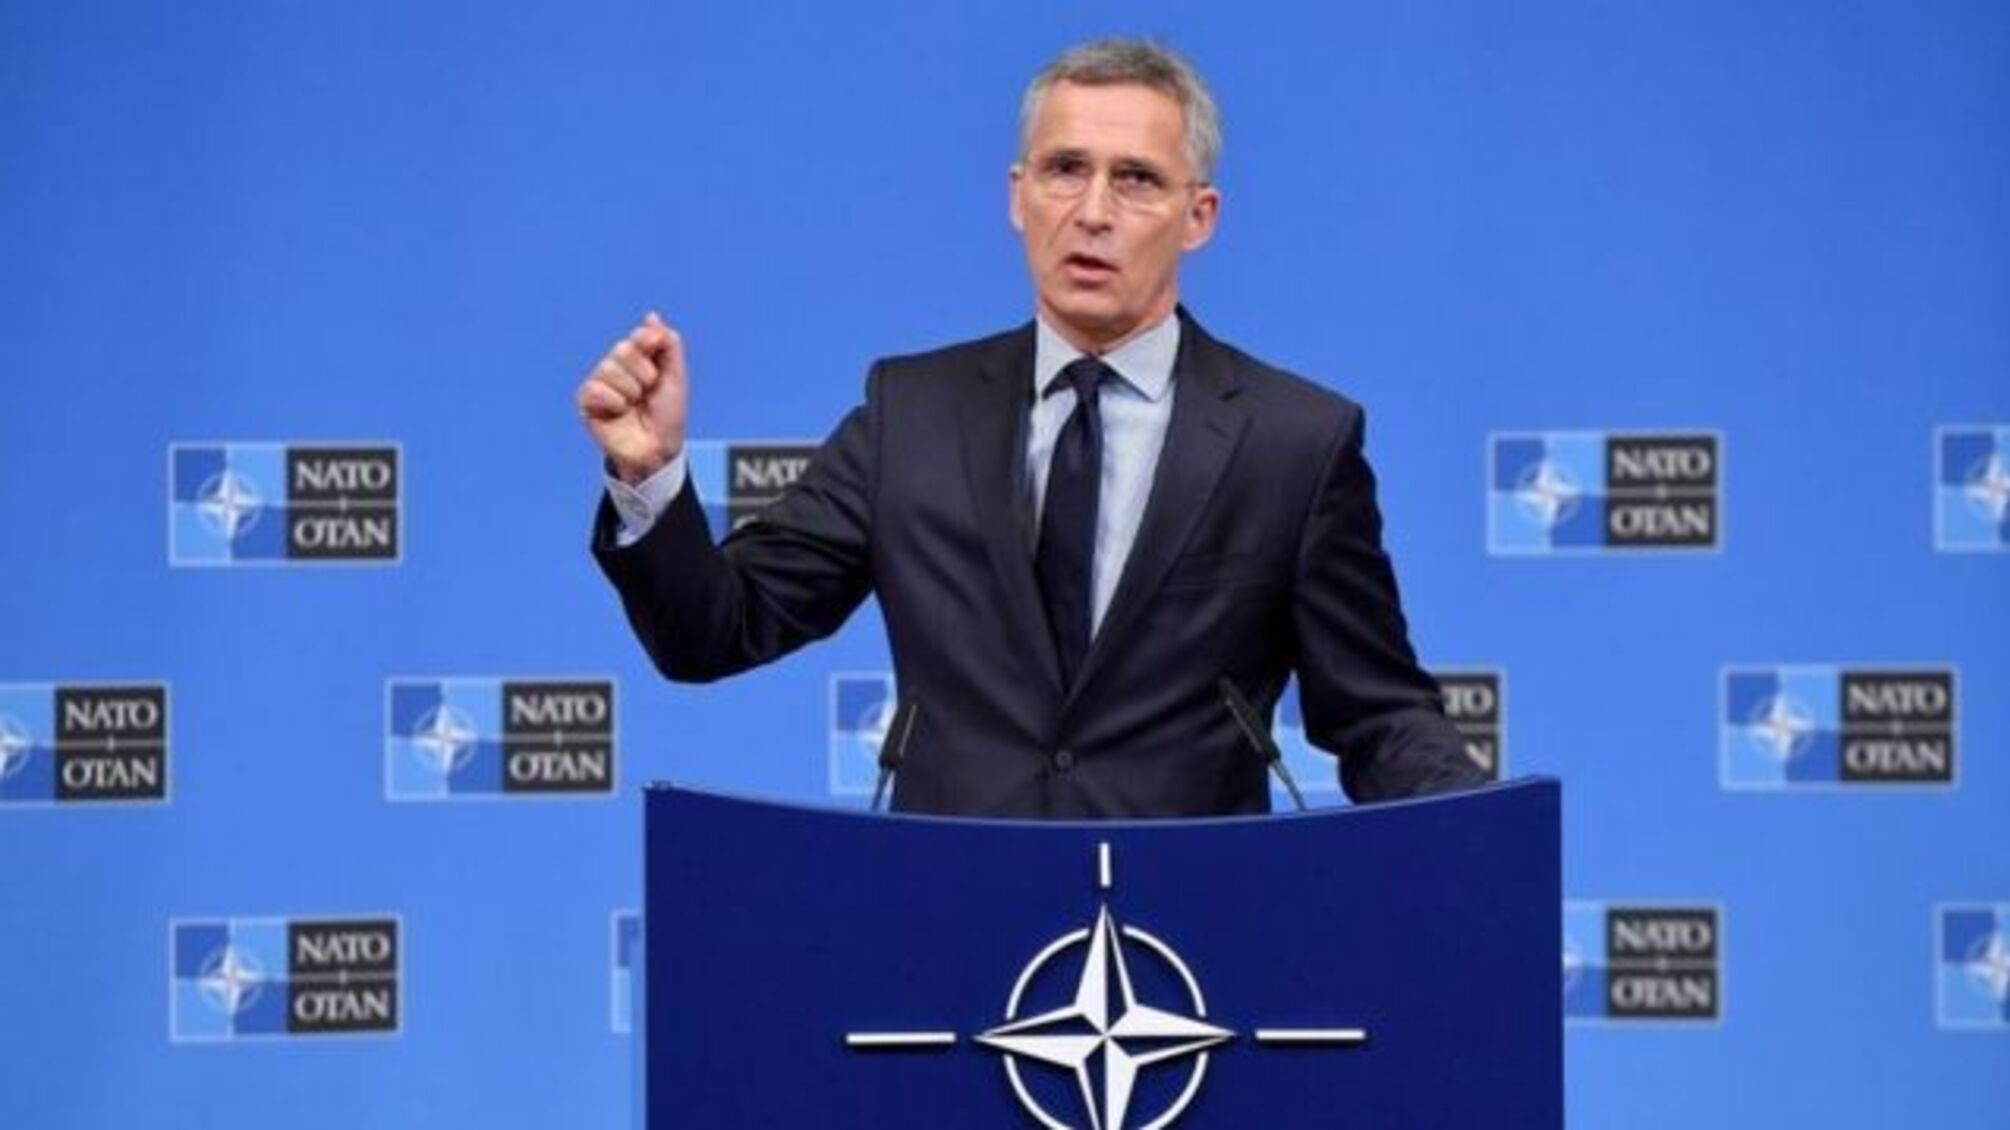 НАТО 'розчаровано' позицією Китаю щодо російського вторгнення, – Столтенберг